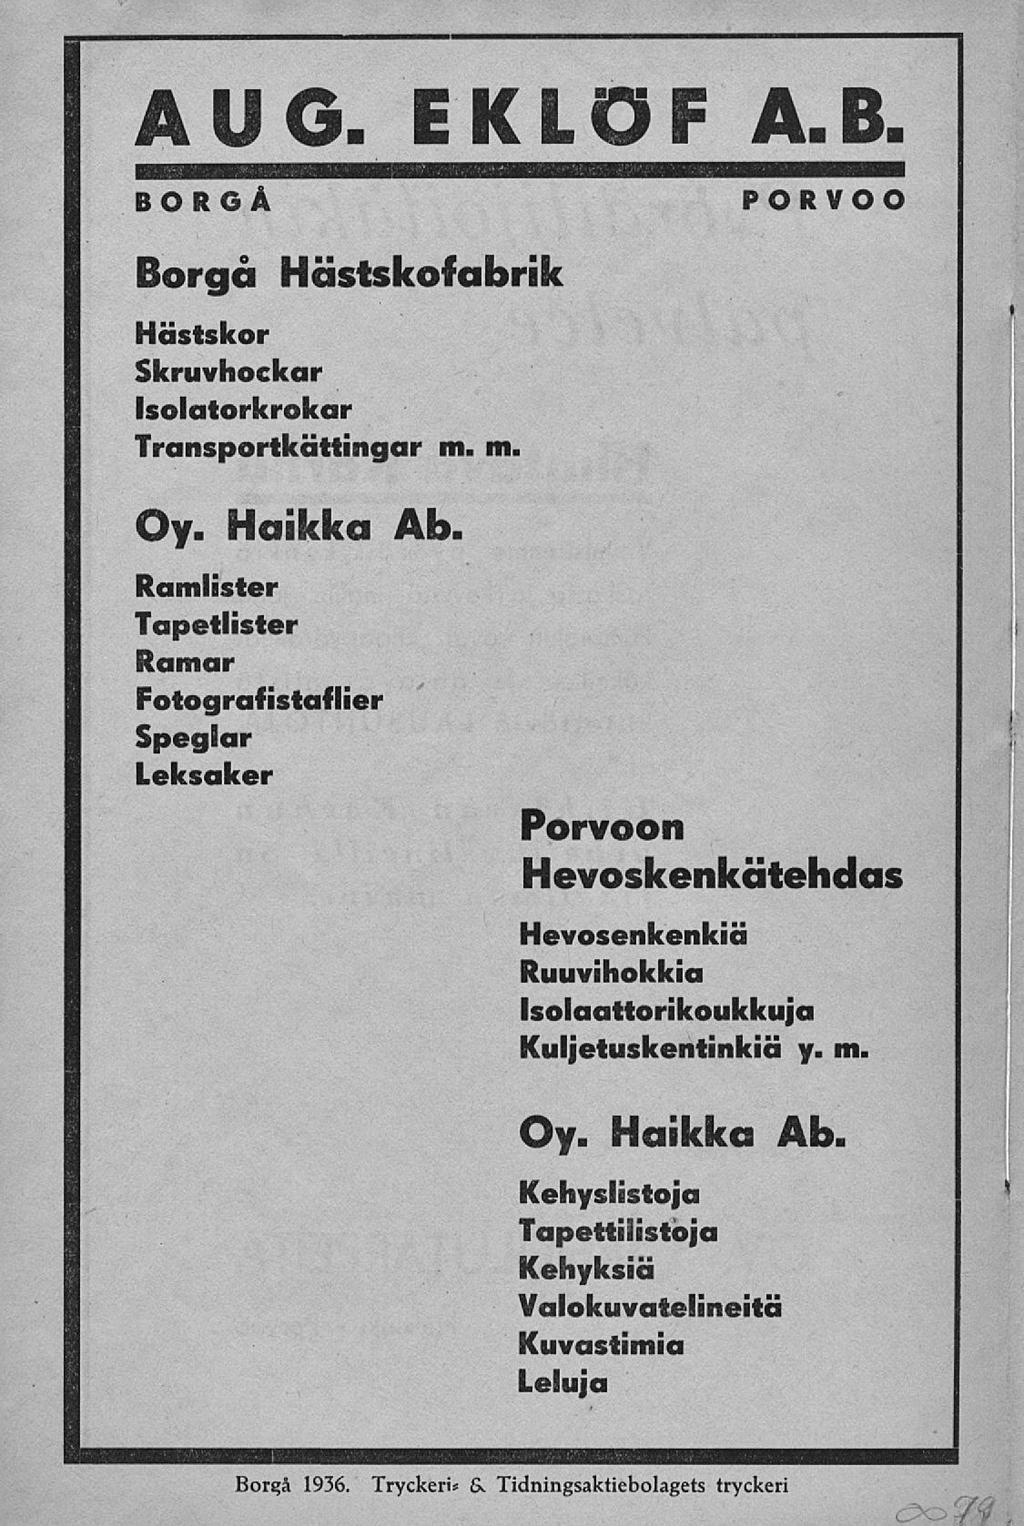 AUG. EKLÖF A.B. BORGÅ Borgå Hästskofabrik Hästskor Skruvhockar Isolaiorkrokar Transportkättingar m. m. PORVOO Oy. Haikka Ab.